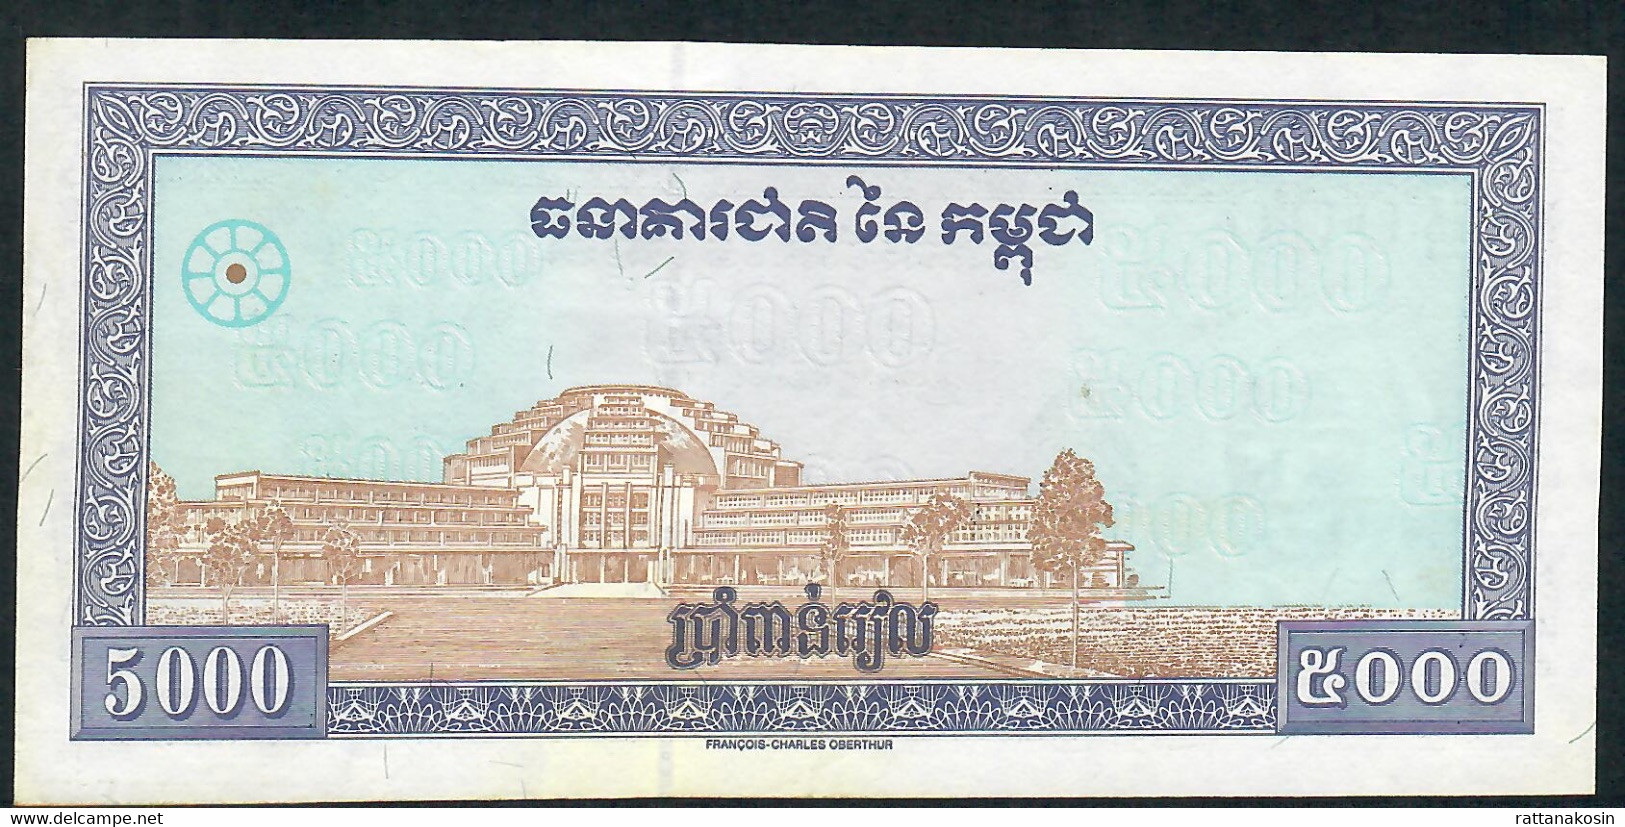 CAMBODIA P46b 5000 RIELS 1998 #C2 Signature 16  AU- UNC. - Cambodia